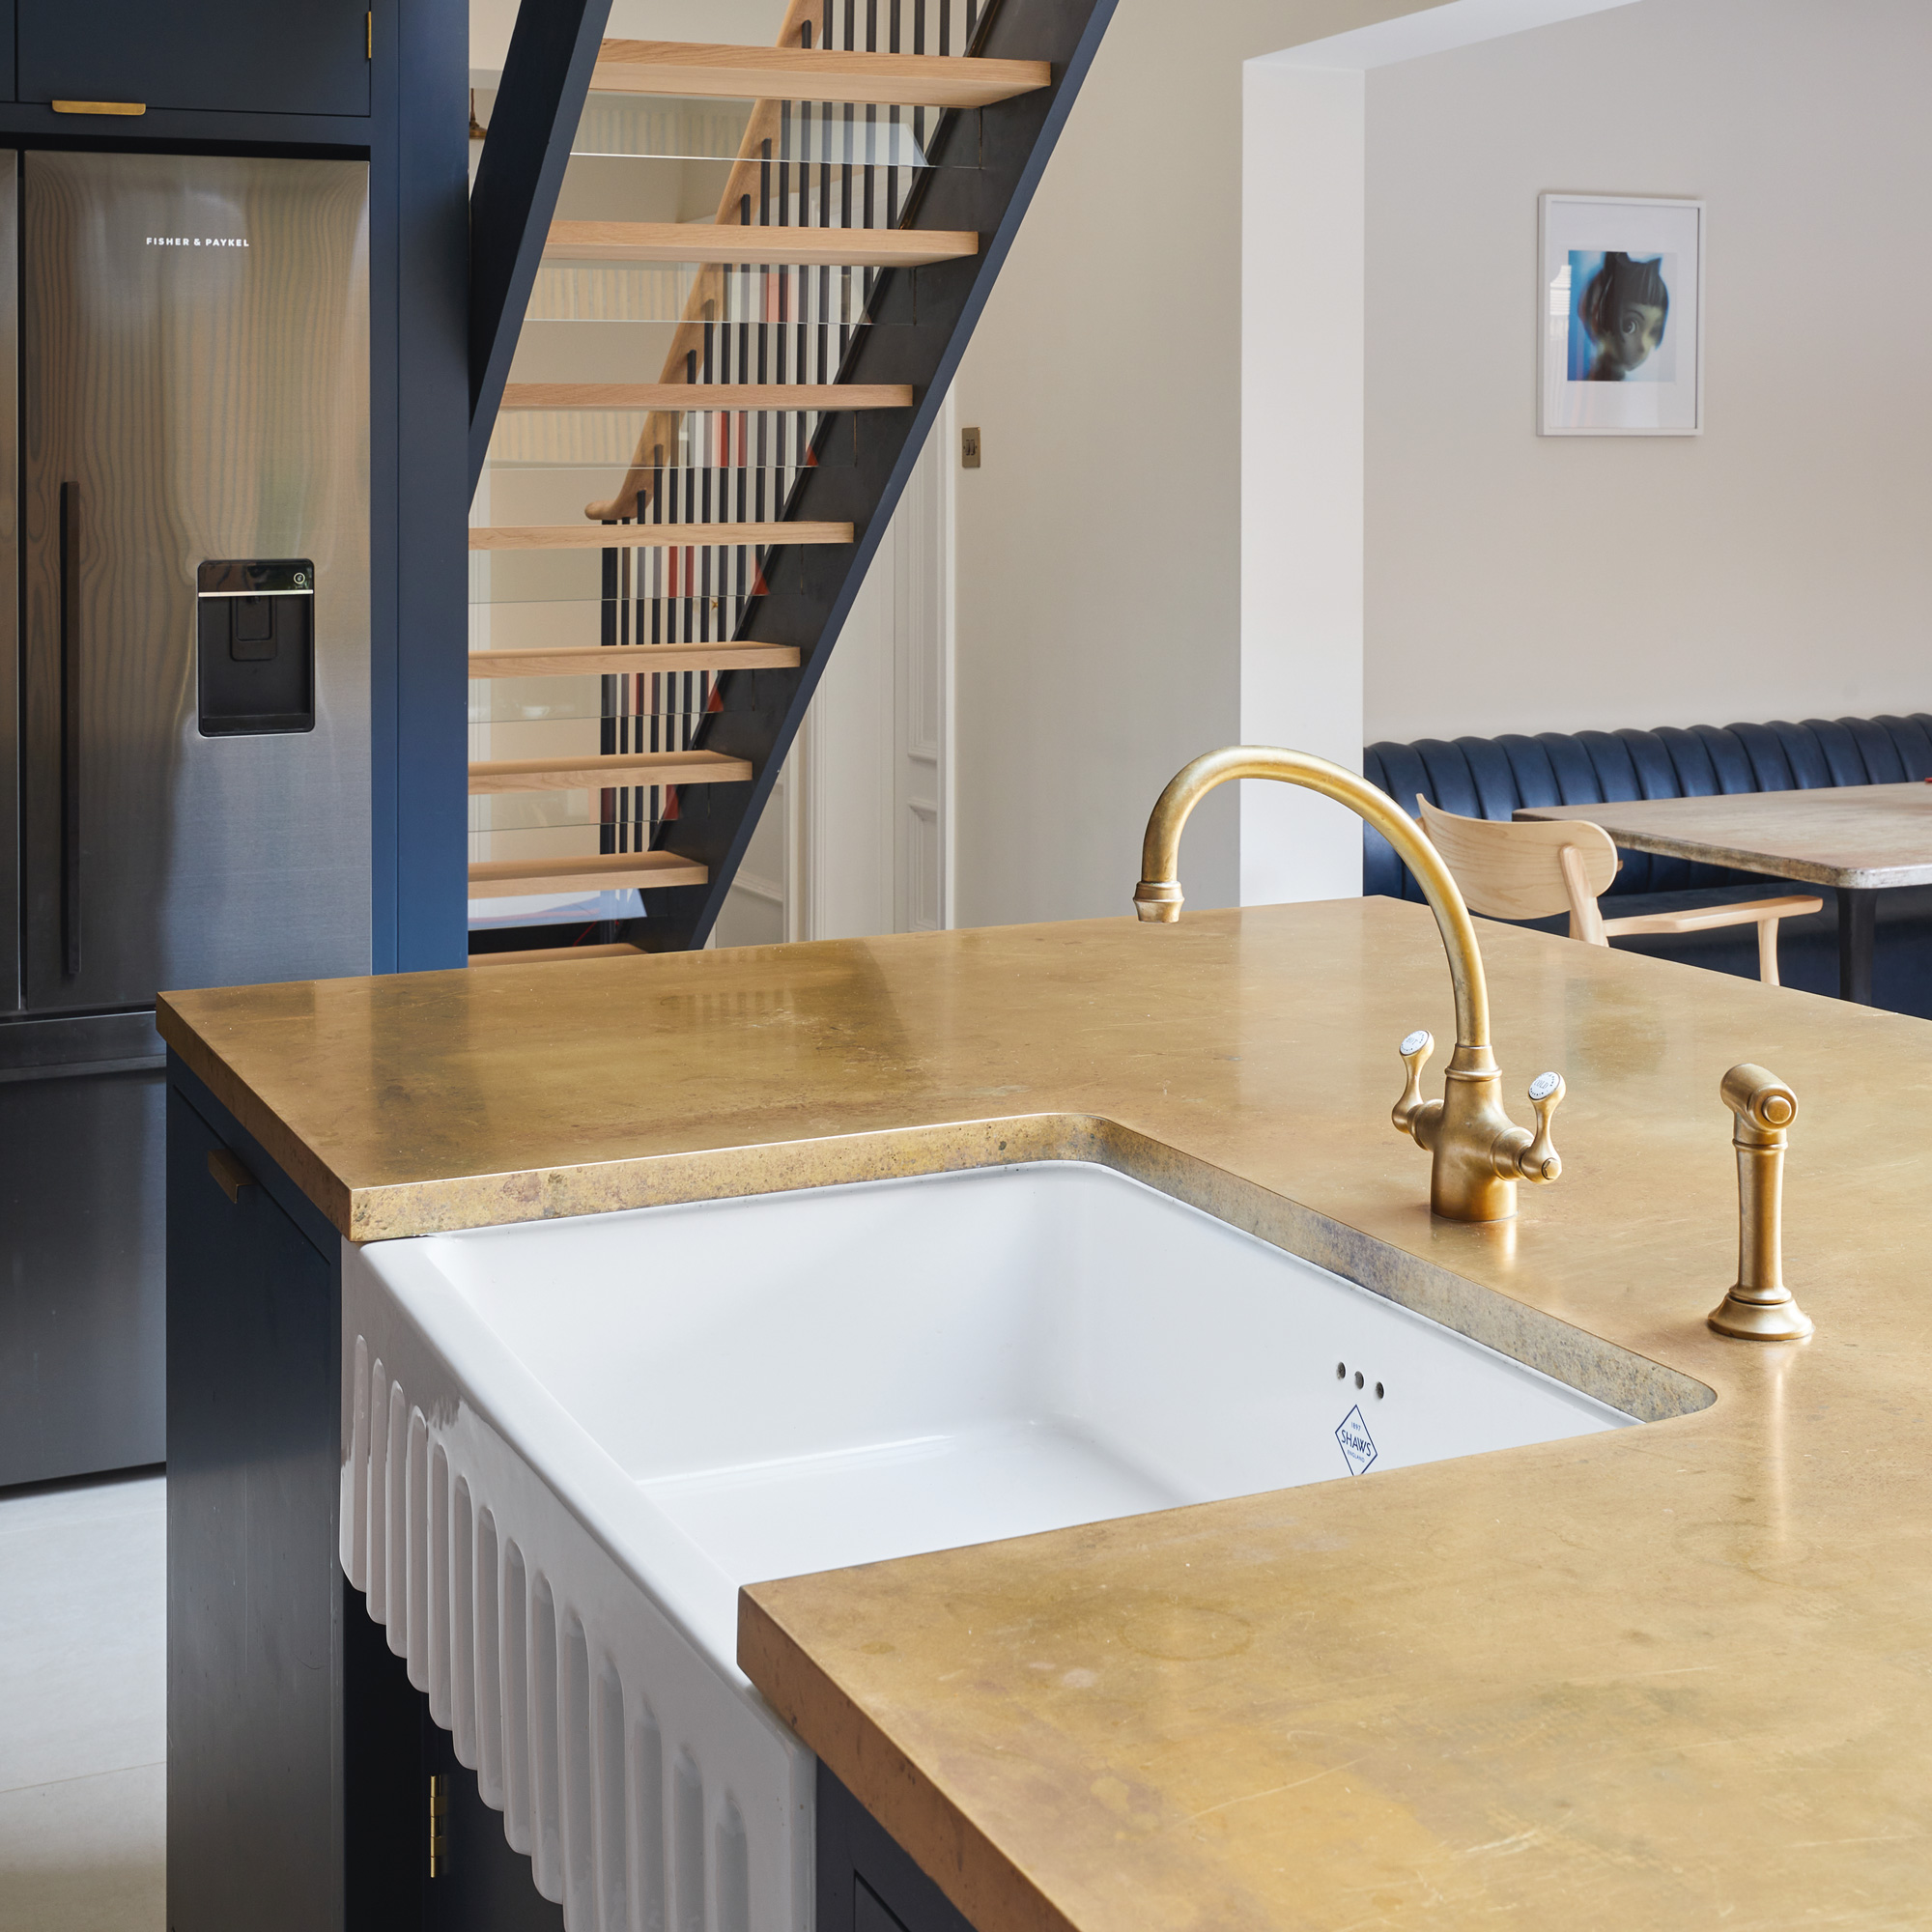 a Belfast sink with brass kitchen tap on a kitchen island